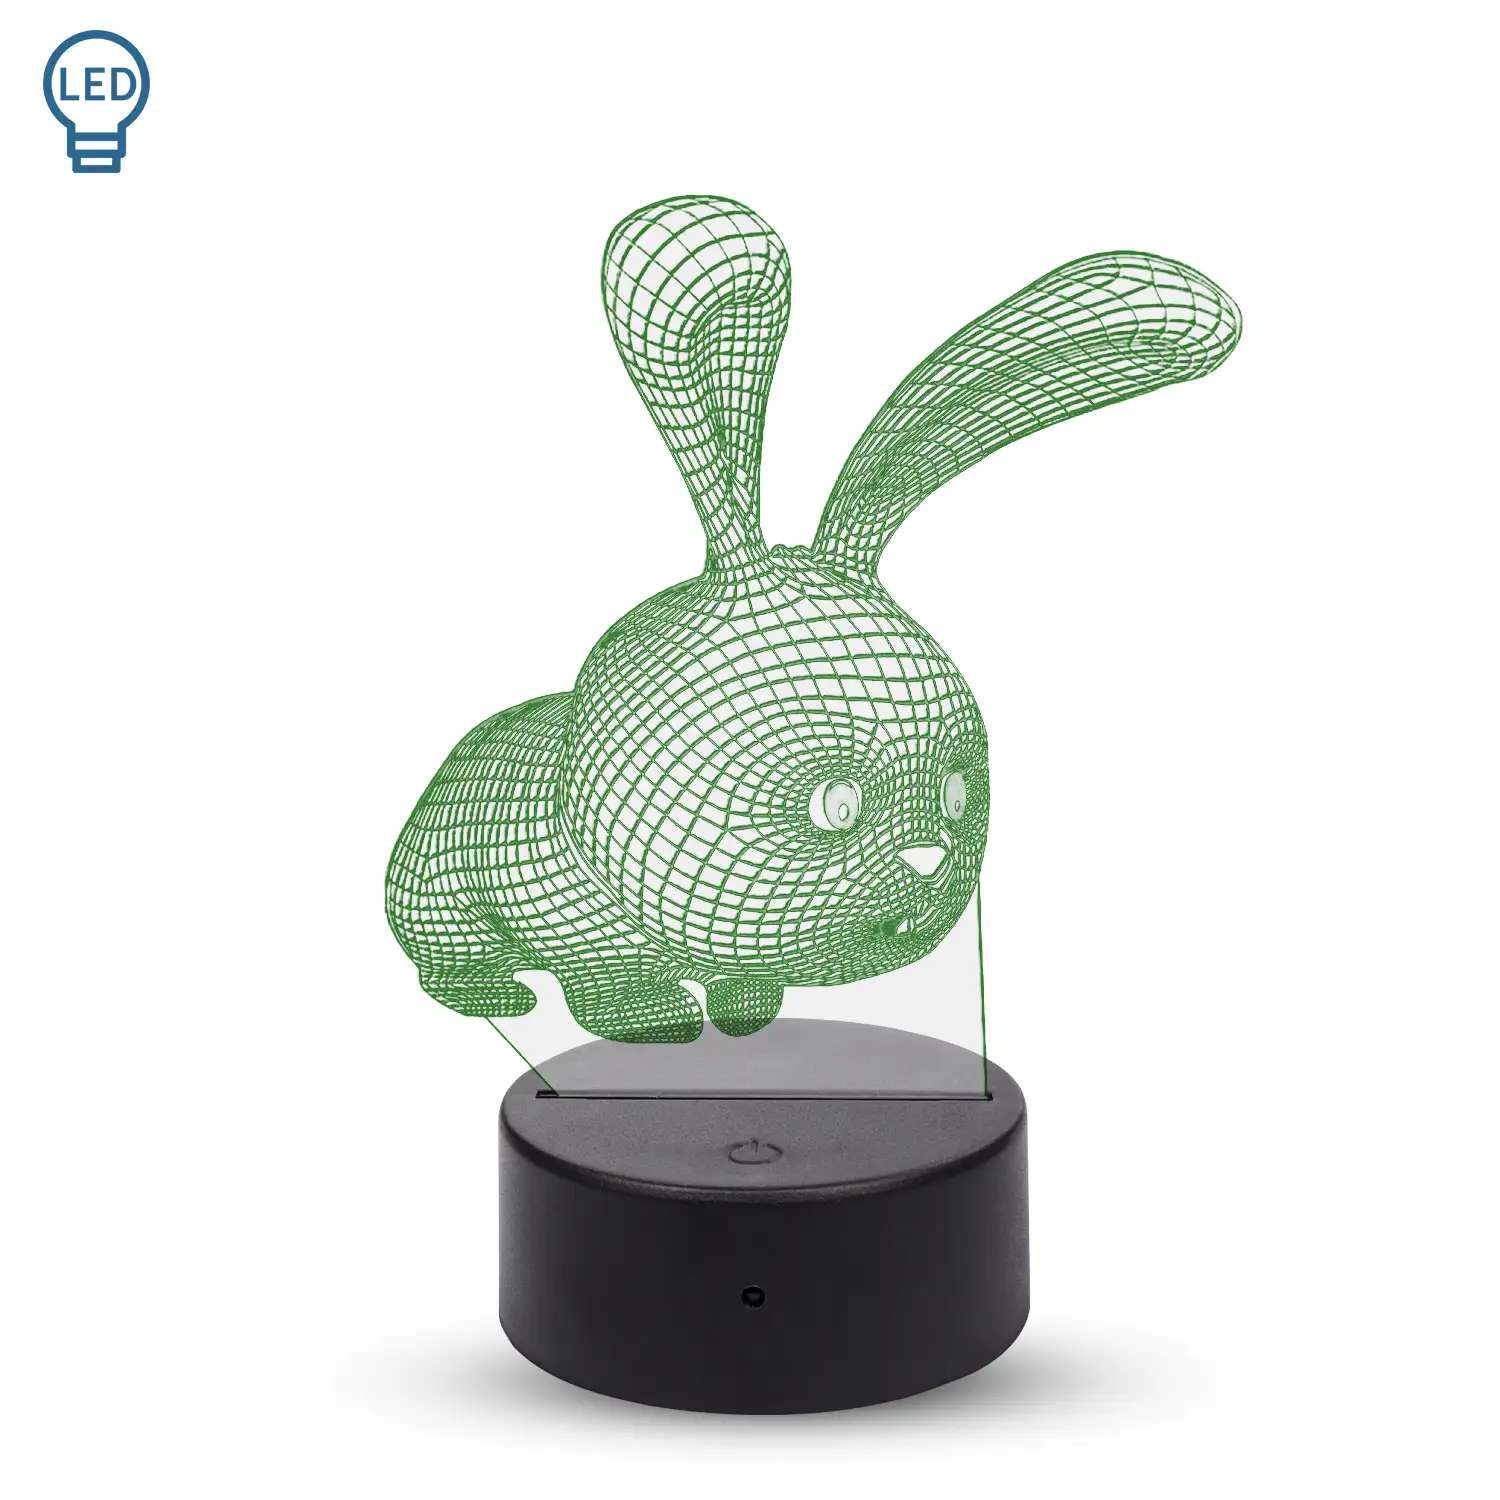 Lámpara ambiental efecto 3D, diseño Conejito. Luces RGB intercambiables, con efectos y mando a distancia.